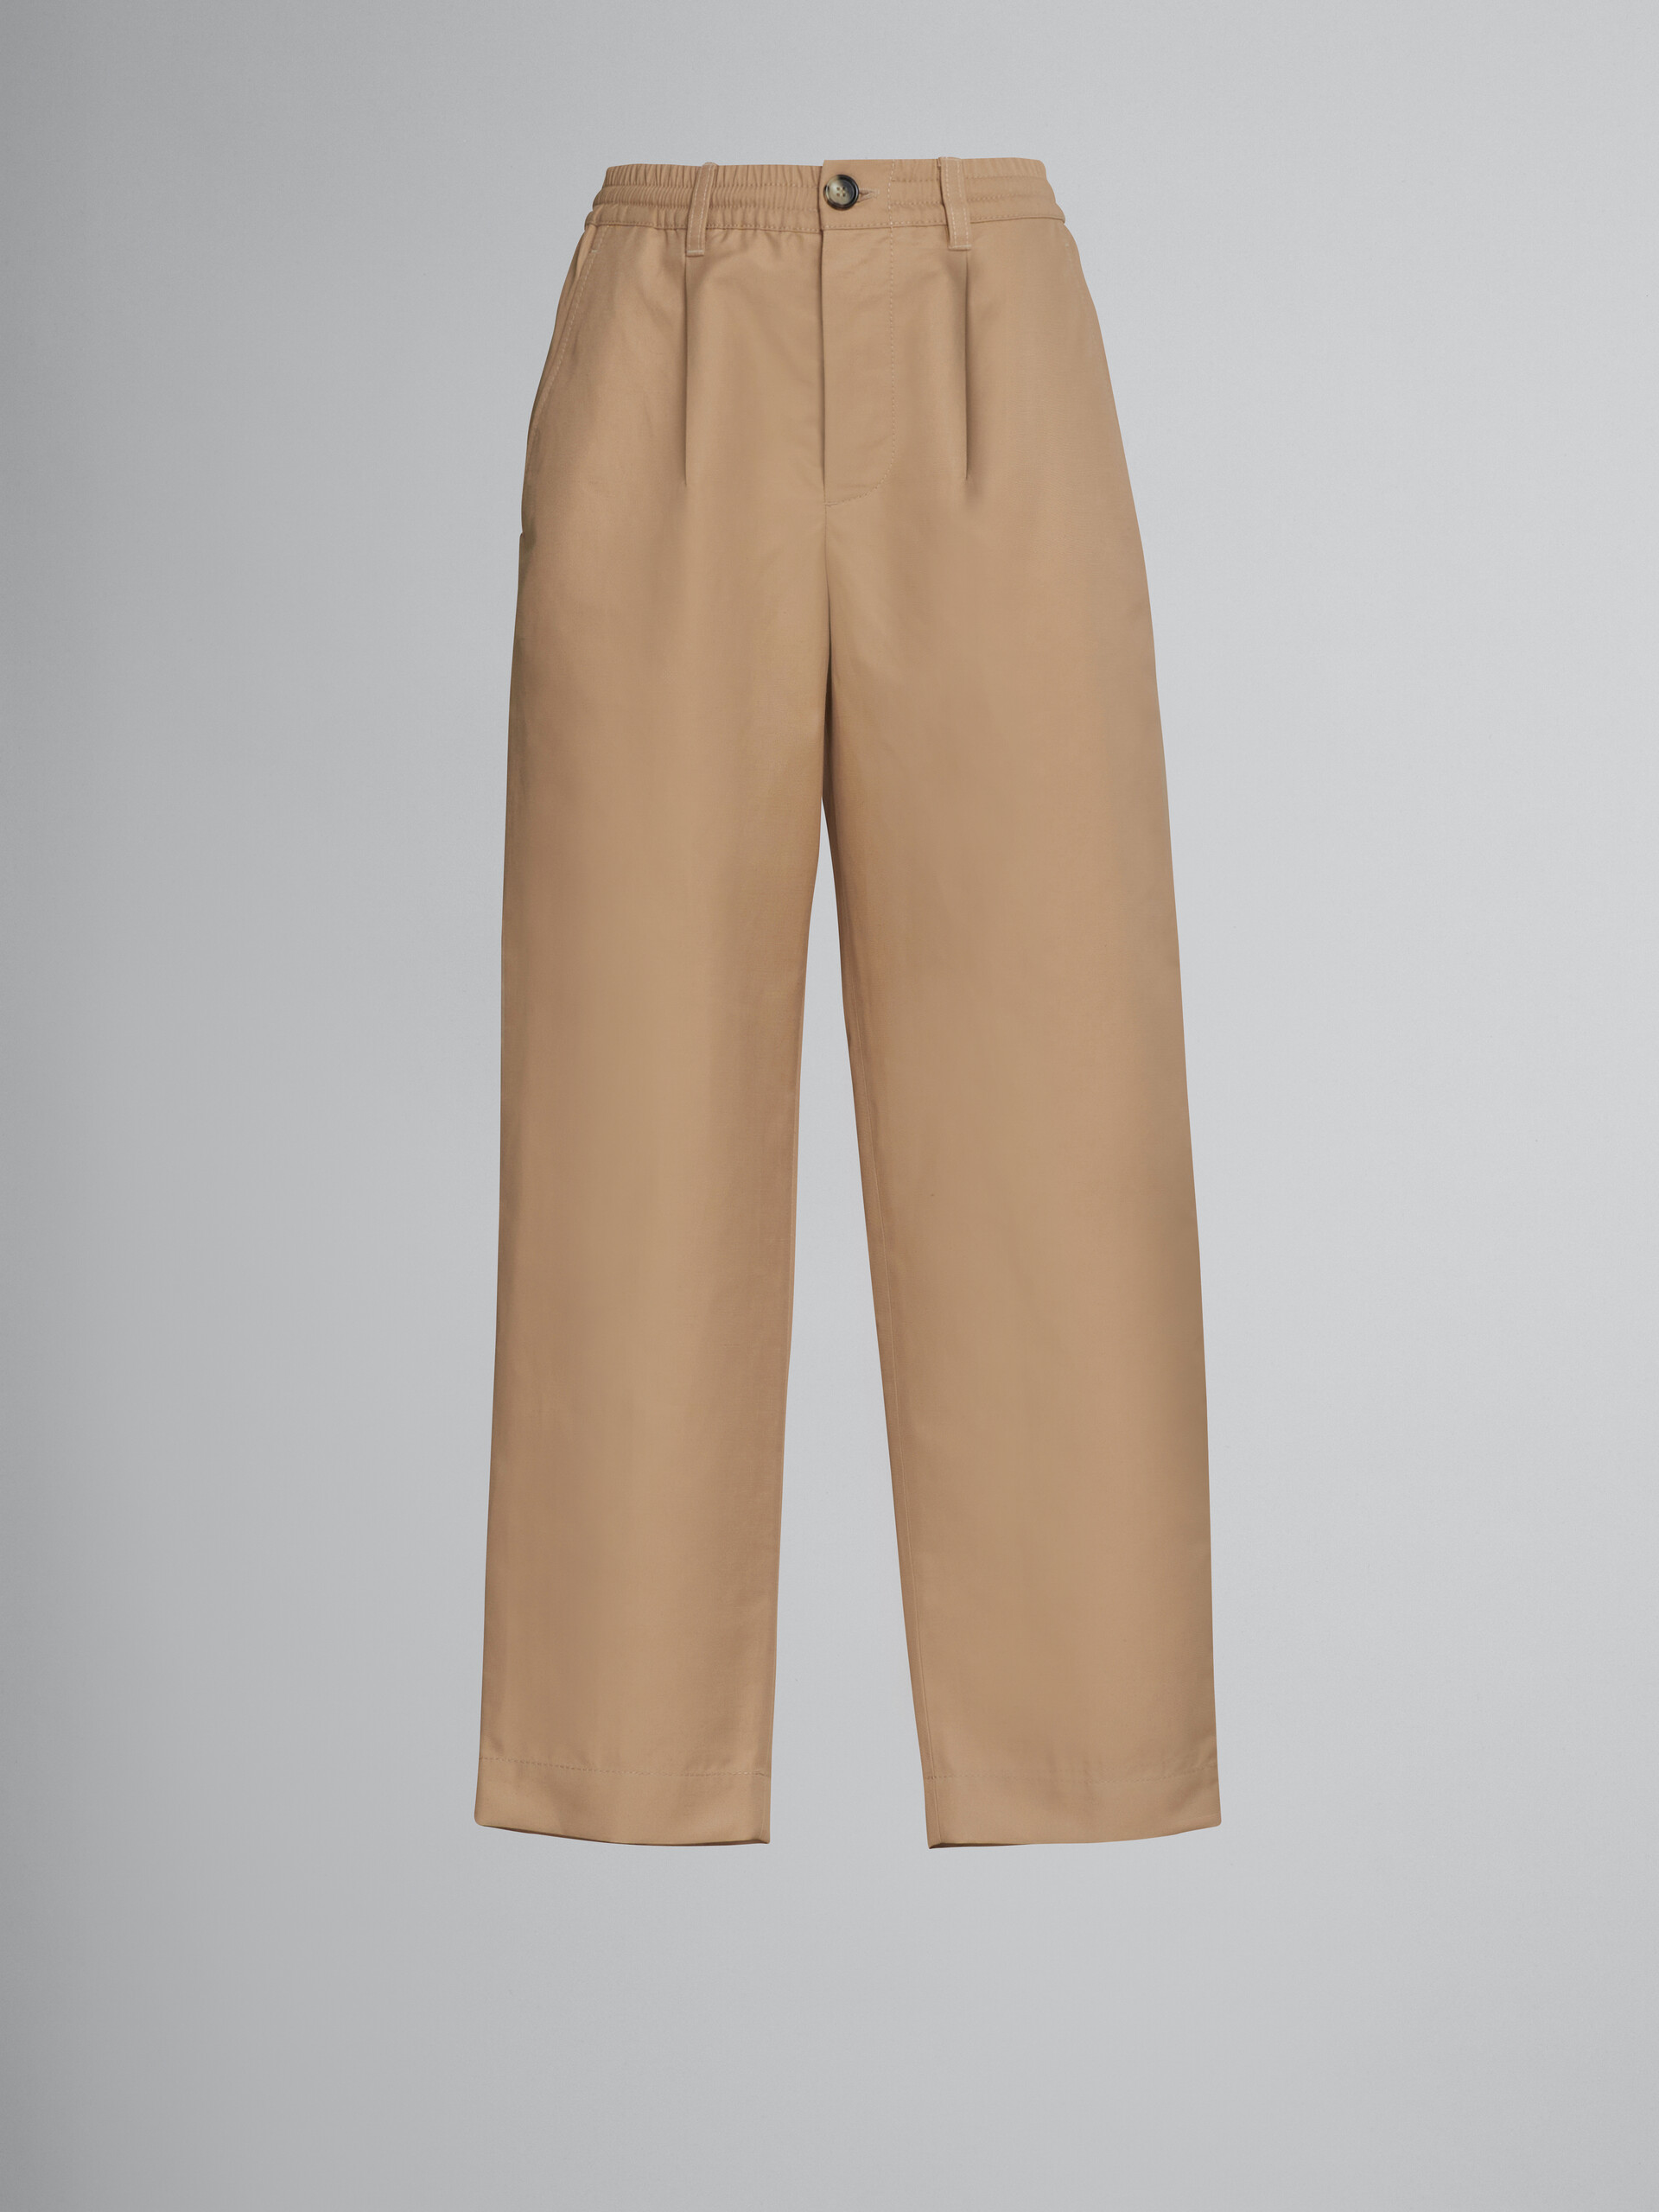 Beigefarbene Hose aus technischem Baumwollleinen - Hosen - Image 1